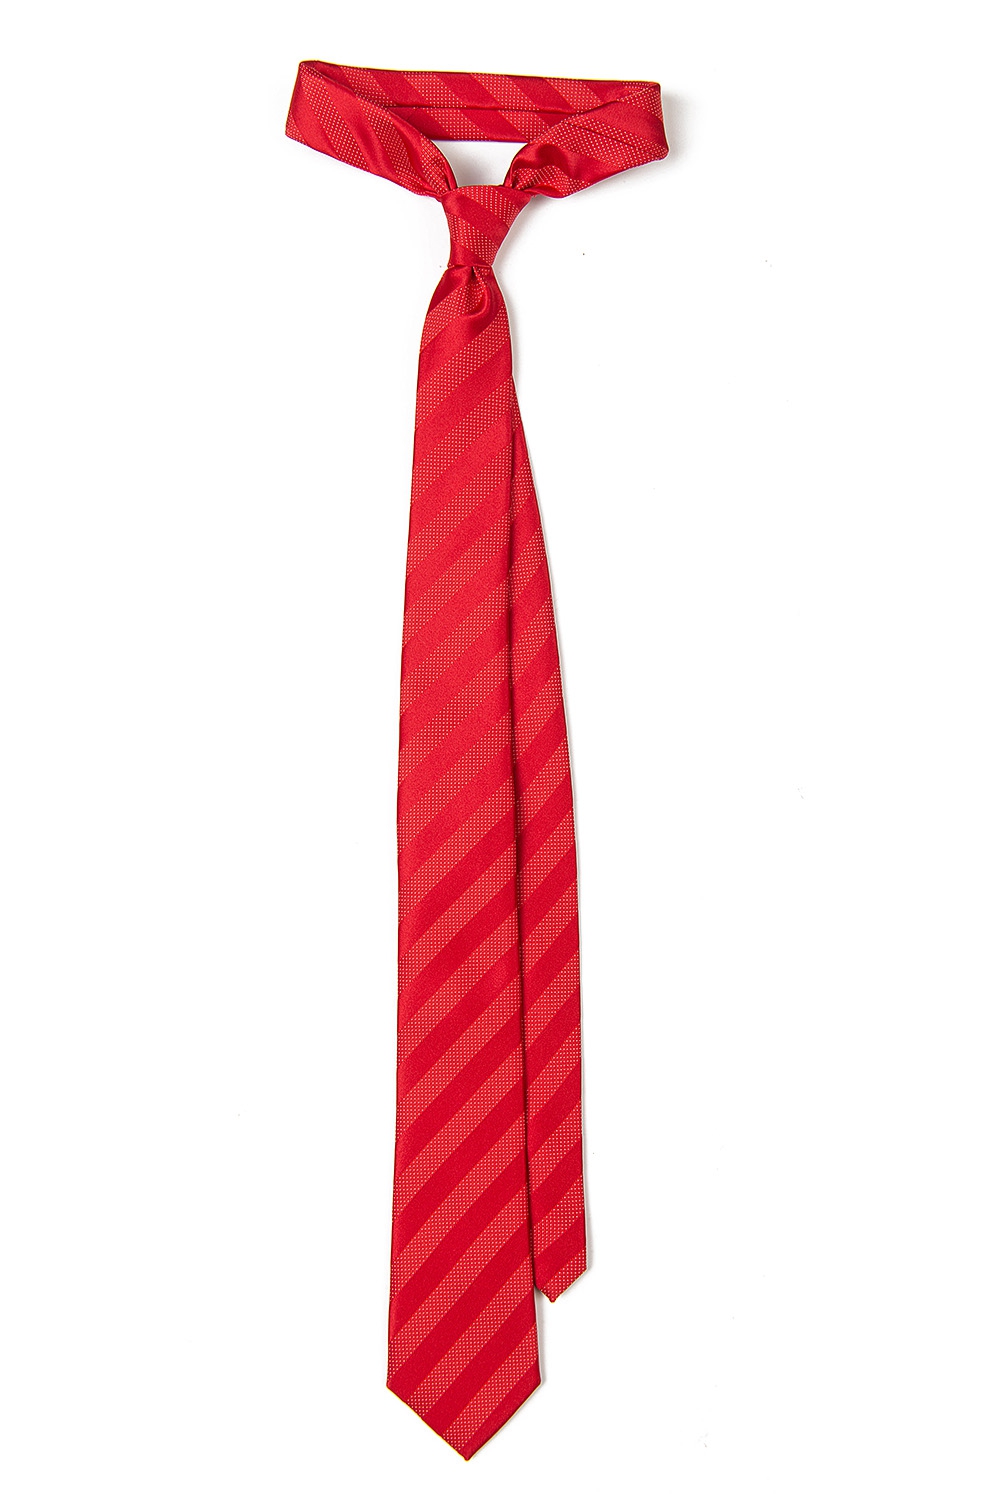 Cravata poliester tesut rosie dungi 0